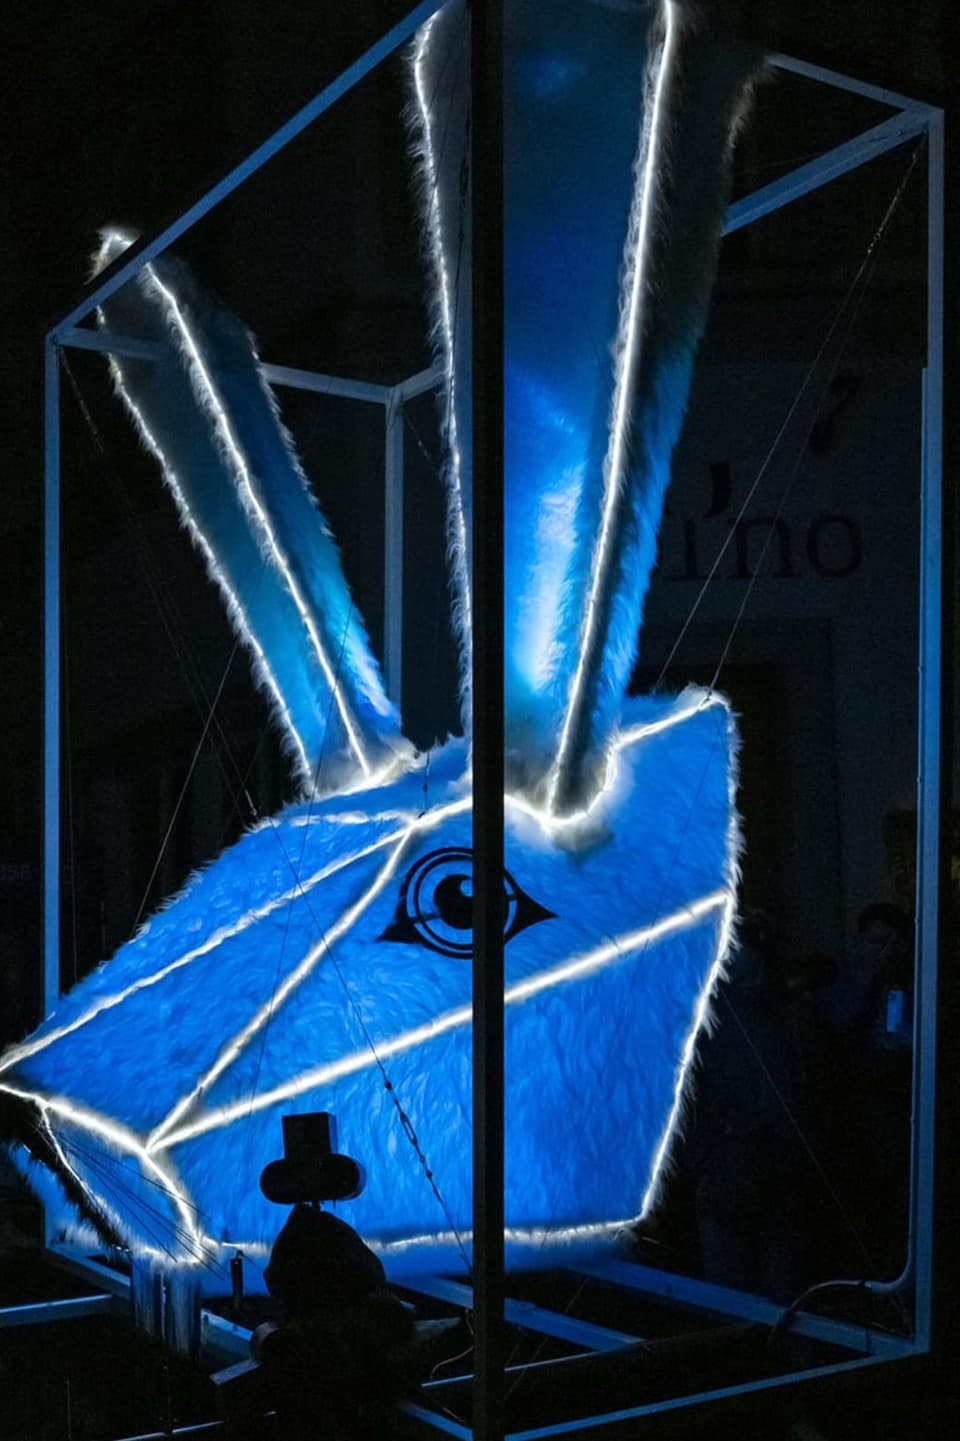 Ein futuristisches, beleuchtetes Sujet eines Hasen in blau.